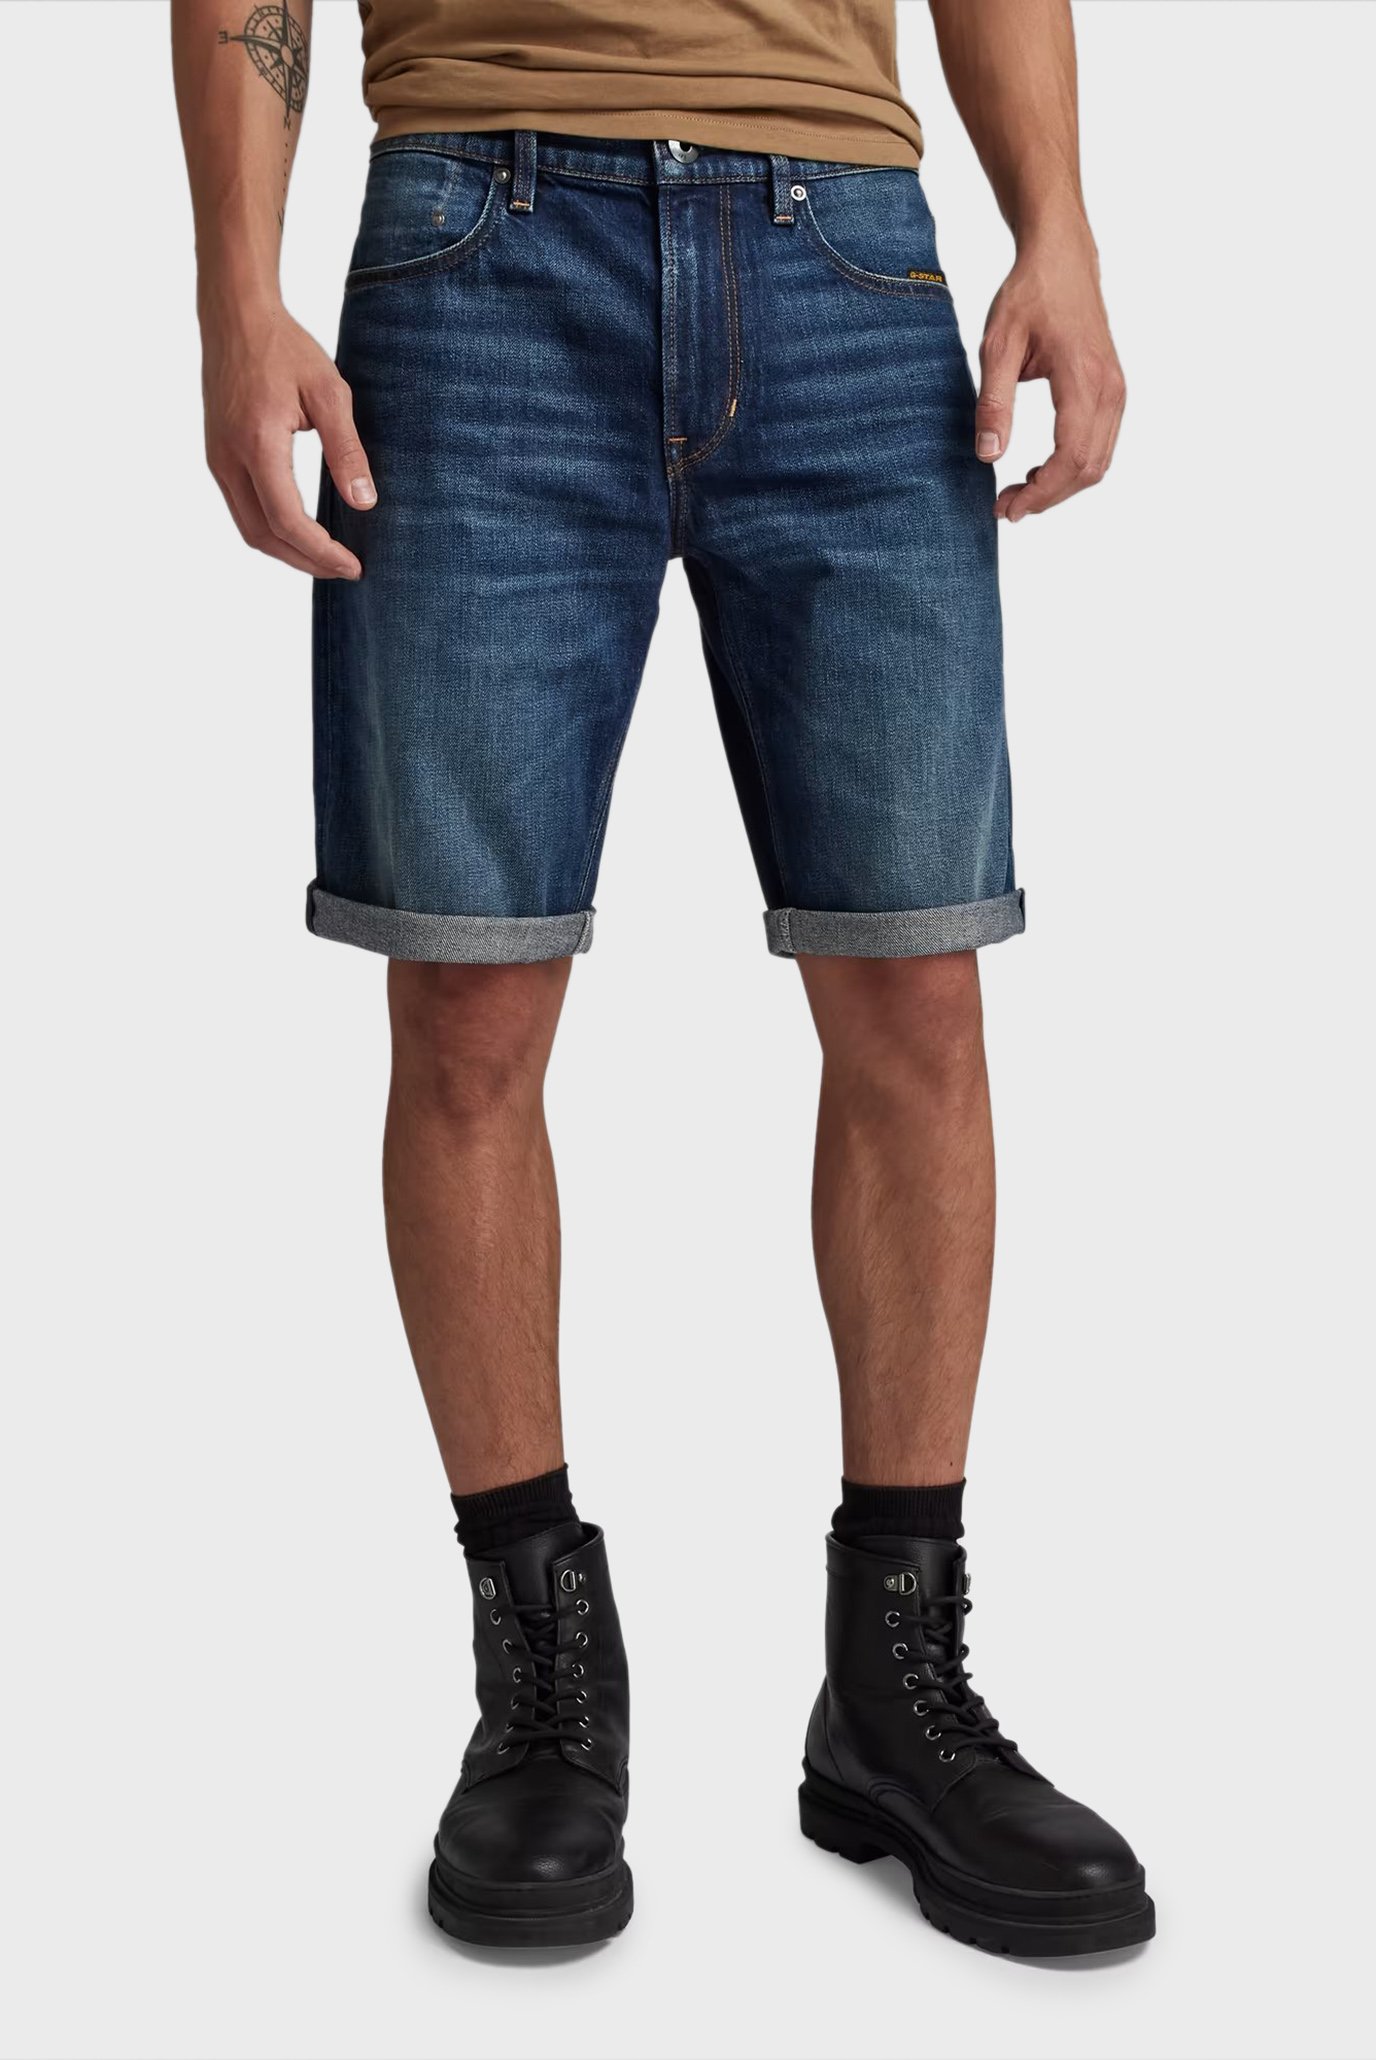 Мужские темно-синие джинсовые шорты Mosa Short 1